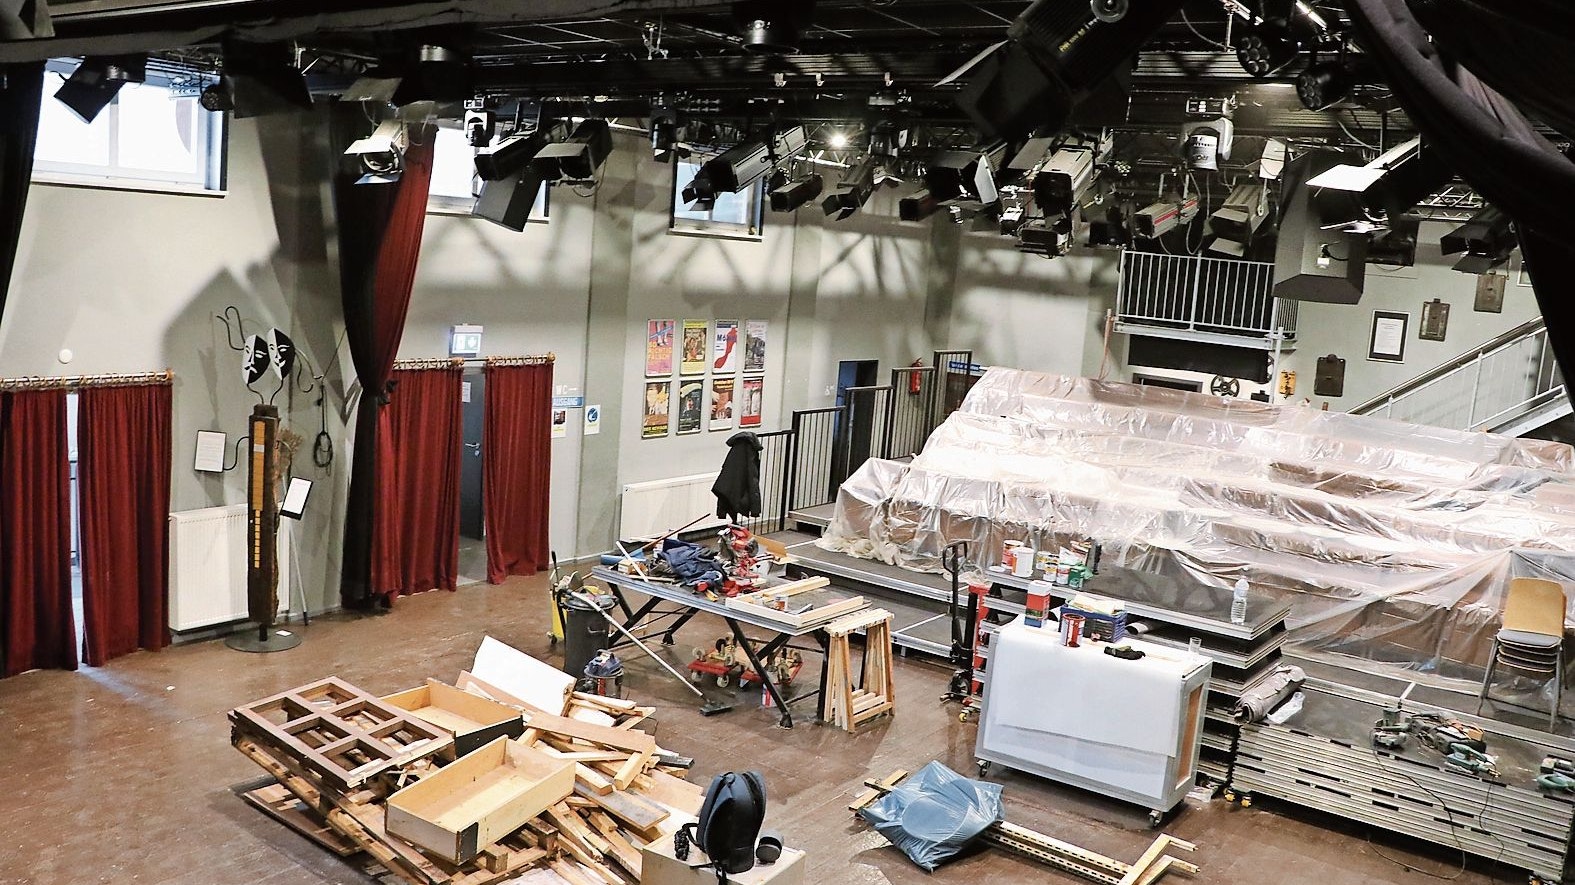 Die spielfreie Zeit wird genutzt: Das Theater gleicht derzeit eher einer Werkstatt. Foto: Uwe Berning